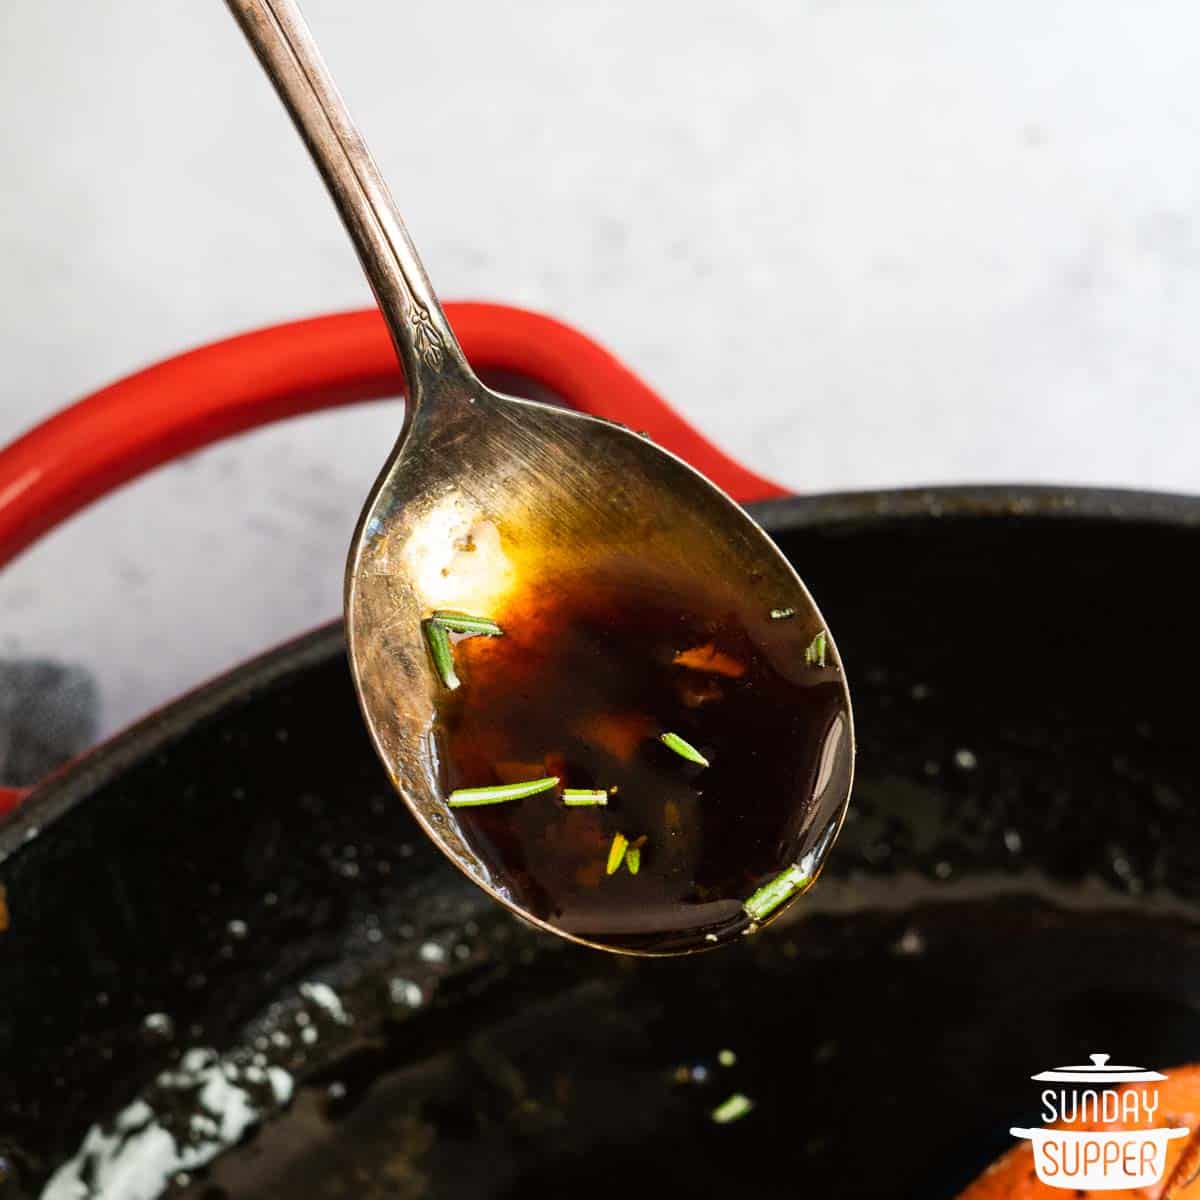 a spoon of hone garlic sauce over a pan